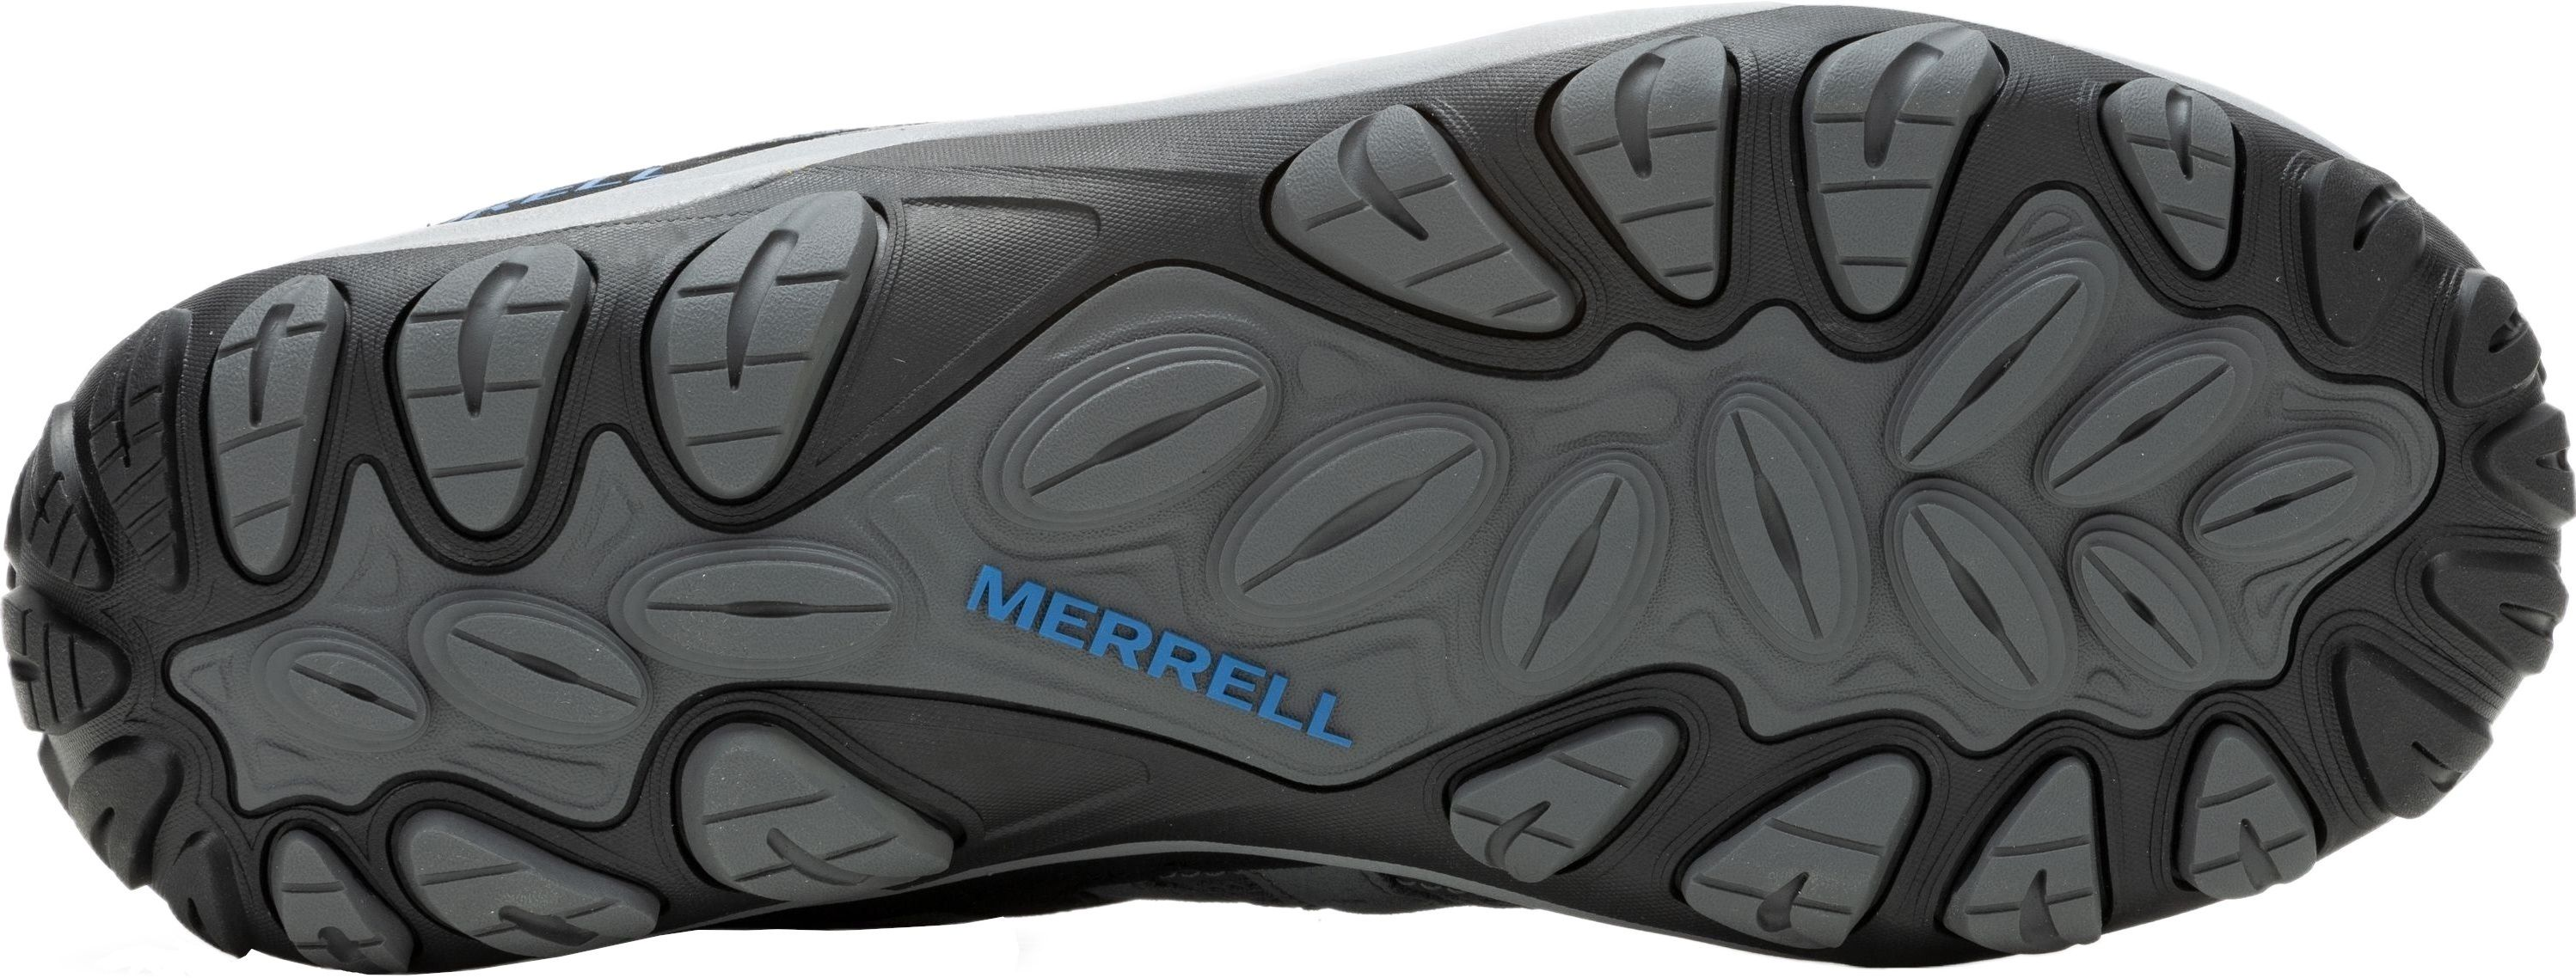 Кроссовки мужские Merrell Accentor 3 Rock/Blue 42 серый/синий фото 6